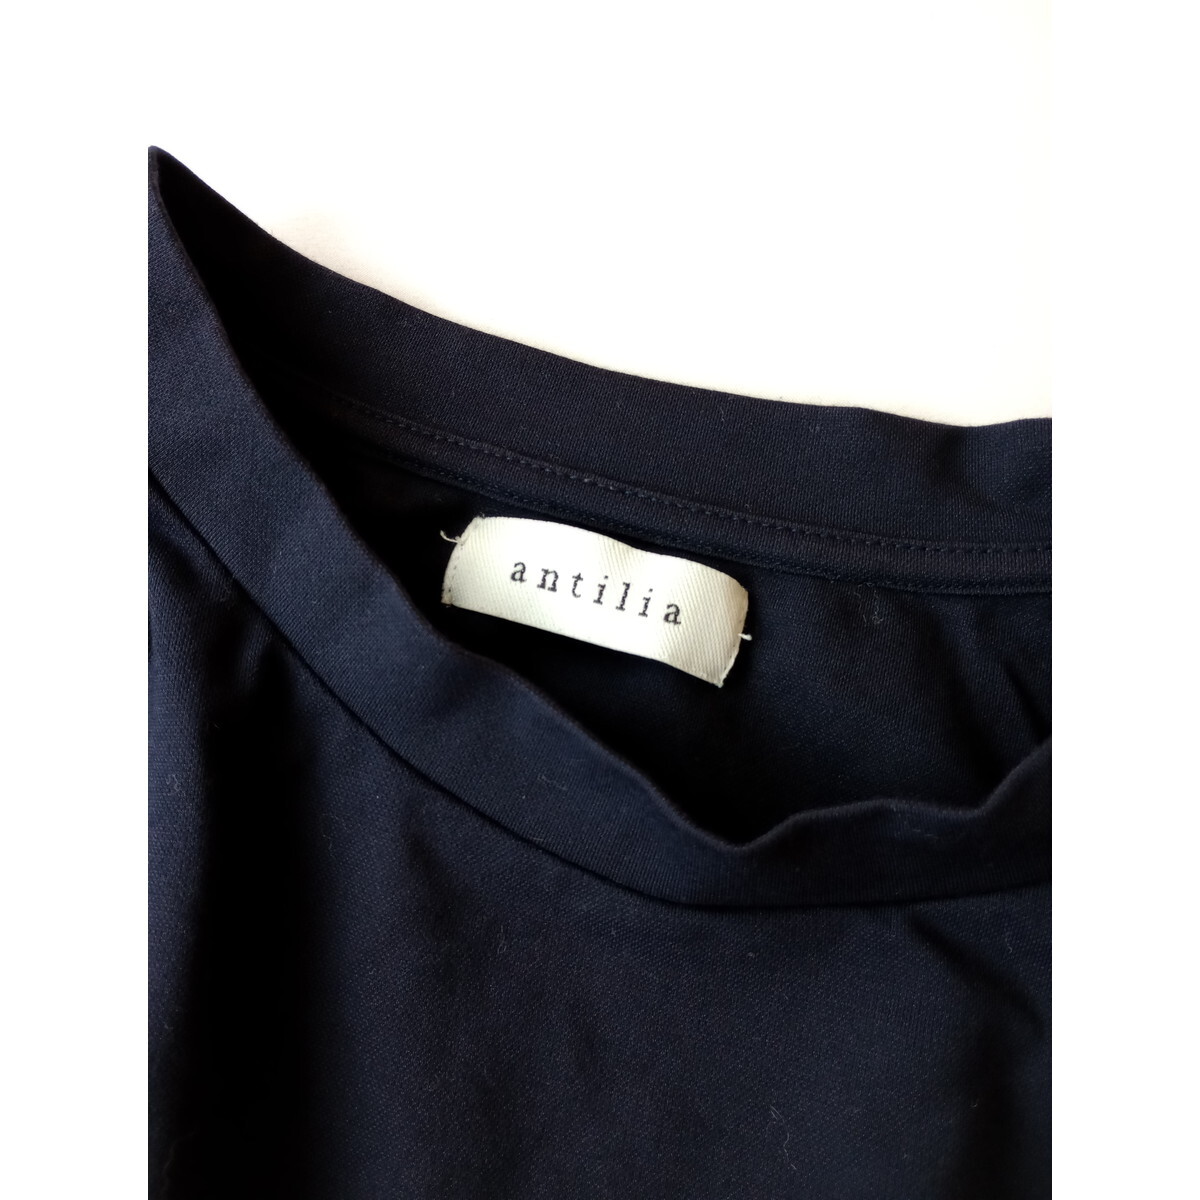 antilia アンティリア「ワードローブにわたしを新発見。」半袖 裾ゴム ブラウス プルオーバー ネイビー (54K+8393)_画像4